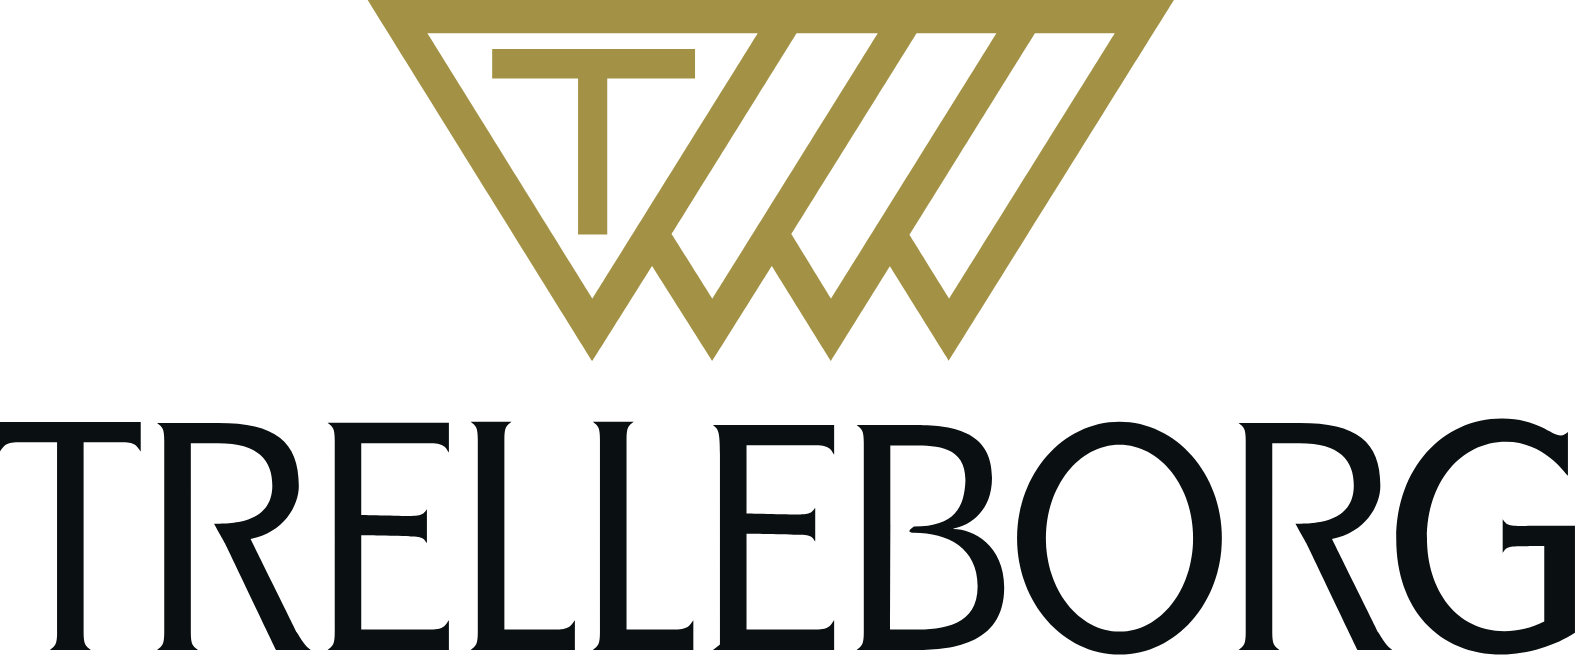 Trelleborg AB logo large (transparent PNG)